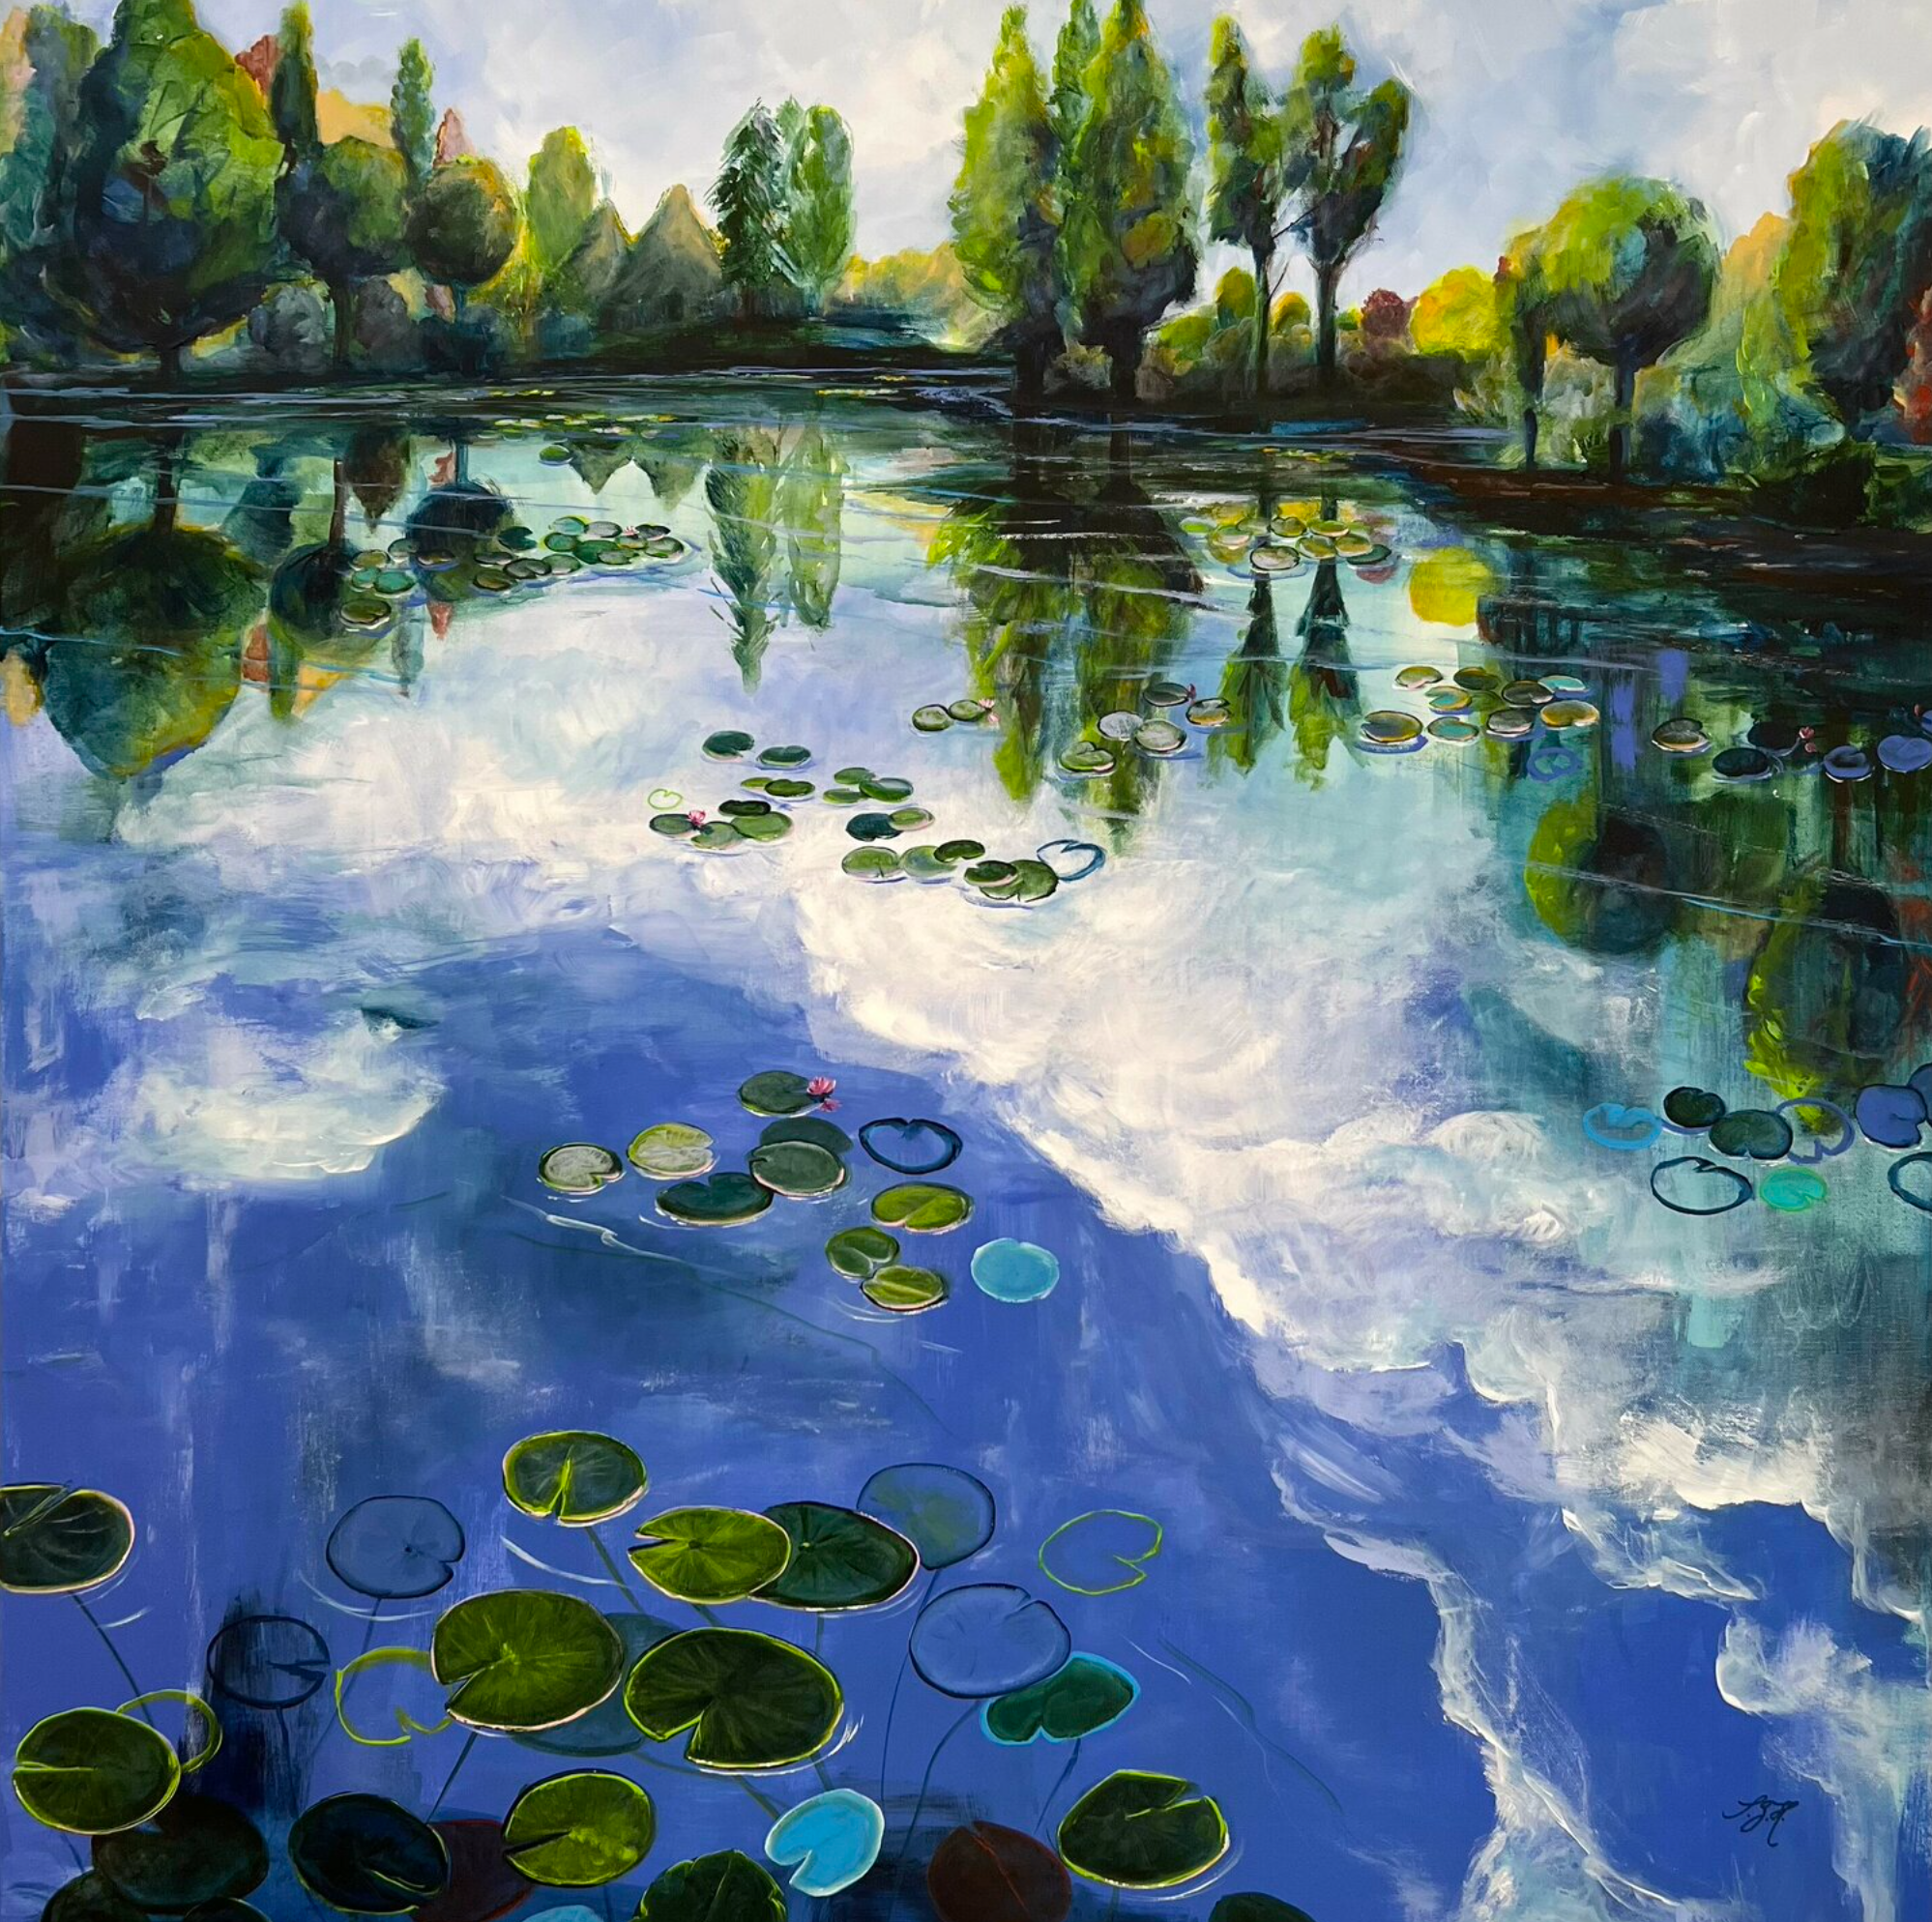 Sandra Gebhardt-Hoepfner的 "睡莲池塘1 "彩色画作展示了一个睡莲池塘和相邻的森林，看着池塘，看着绿色沉睡的树叶与粉红色的睡莲不慌不忙的活动，是那么的宁静和放松。蓝天与白云的倒影。这里的颜色是普鲁士蓝、白色、绿色、米色、粉红色、粉红色和皇家蓝。如果你把图片转180度，如果你仔细观察并发挥你的想象力，你会看到一个女人躺在她的肚子上。